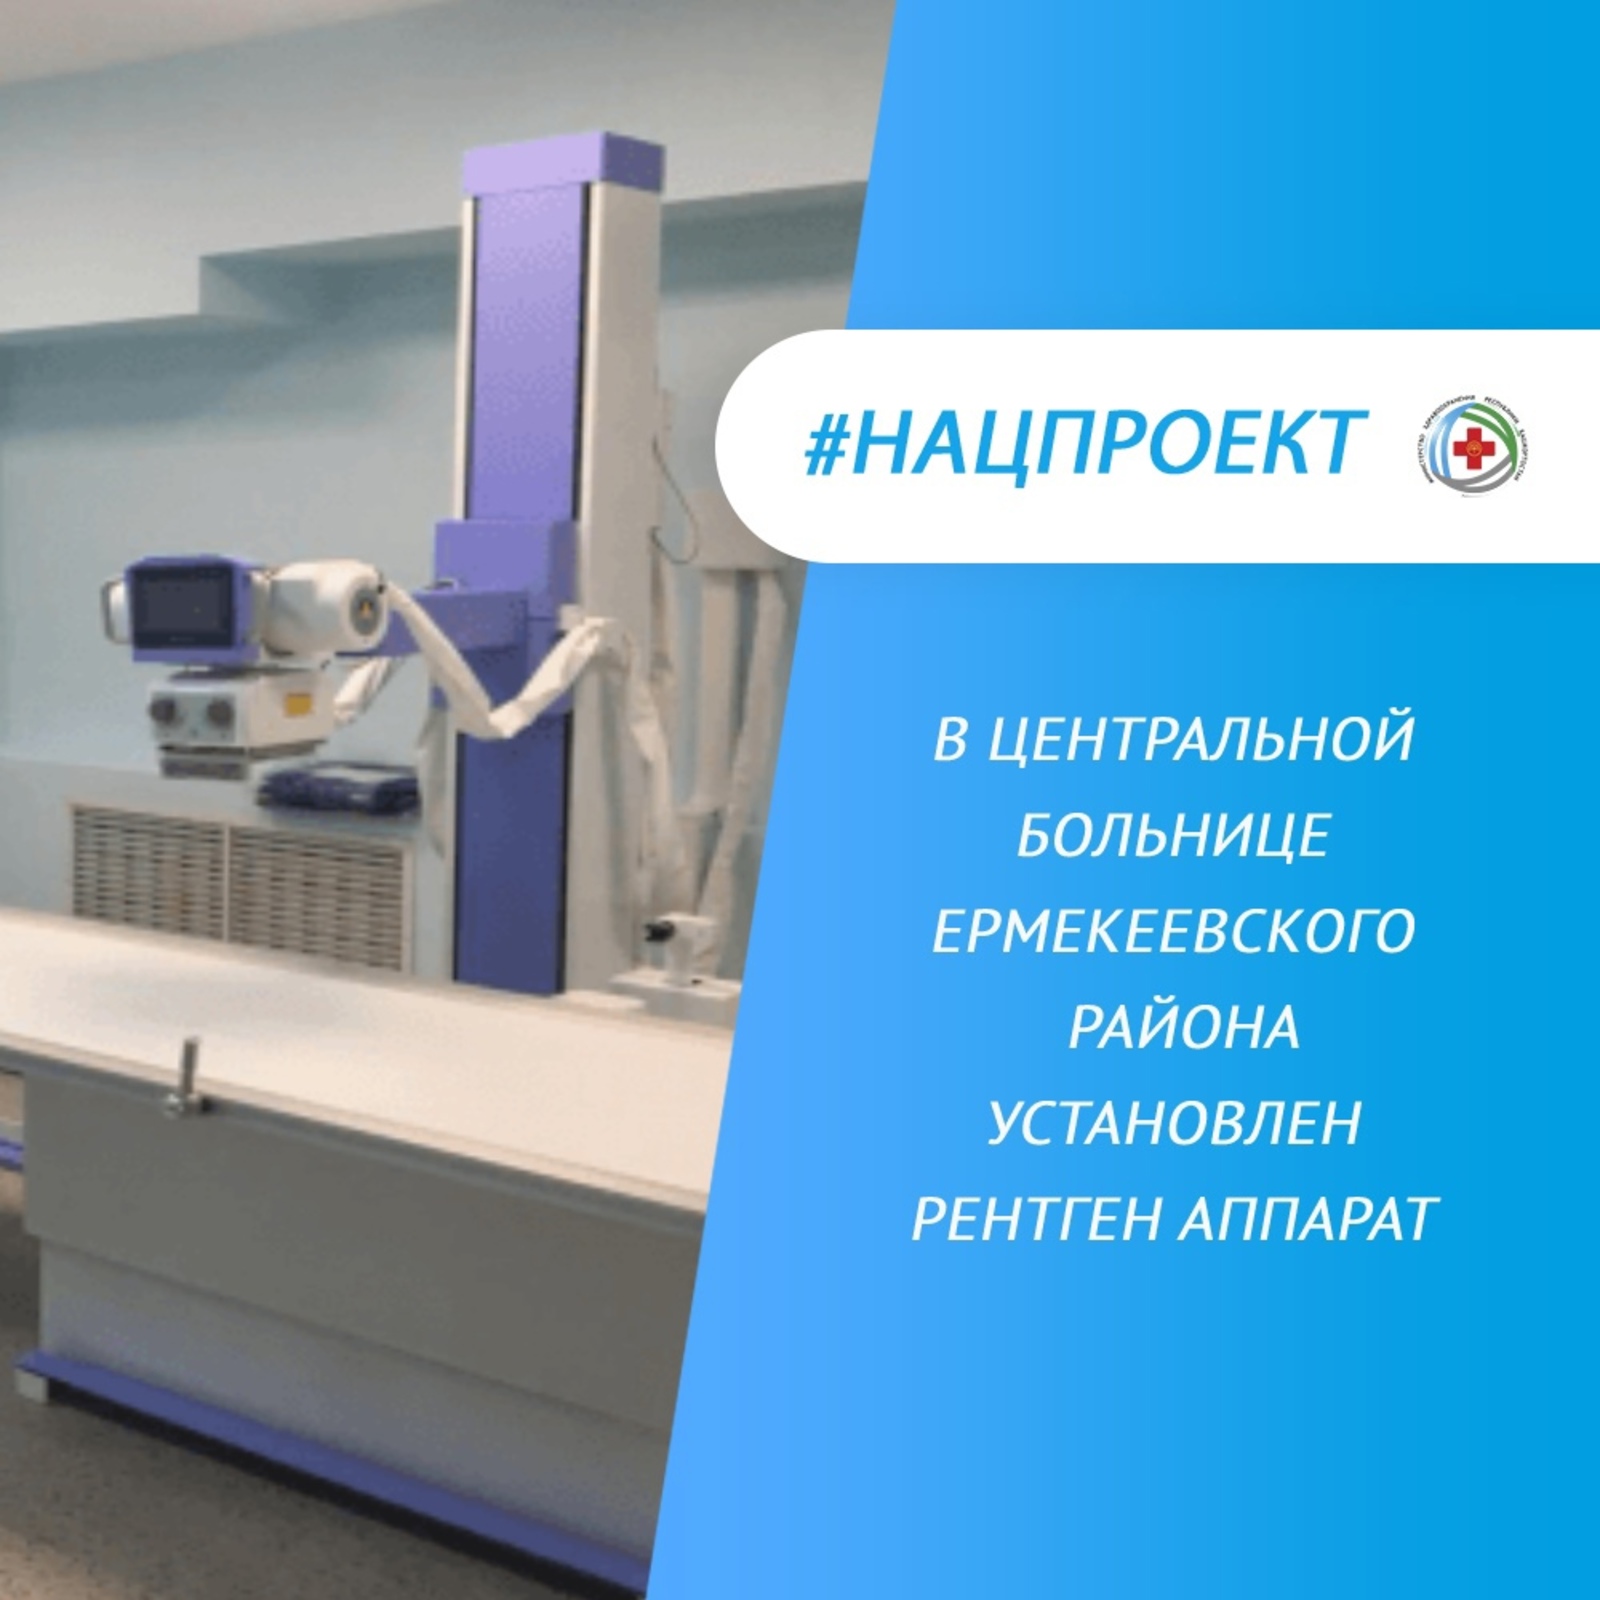 В центральной больнице Ермекеевского района установлен рентген аппарат "Диаком"